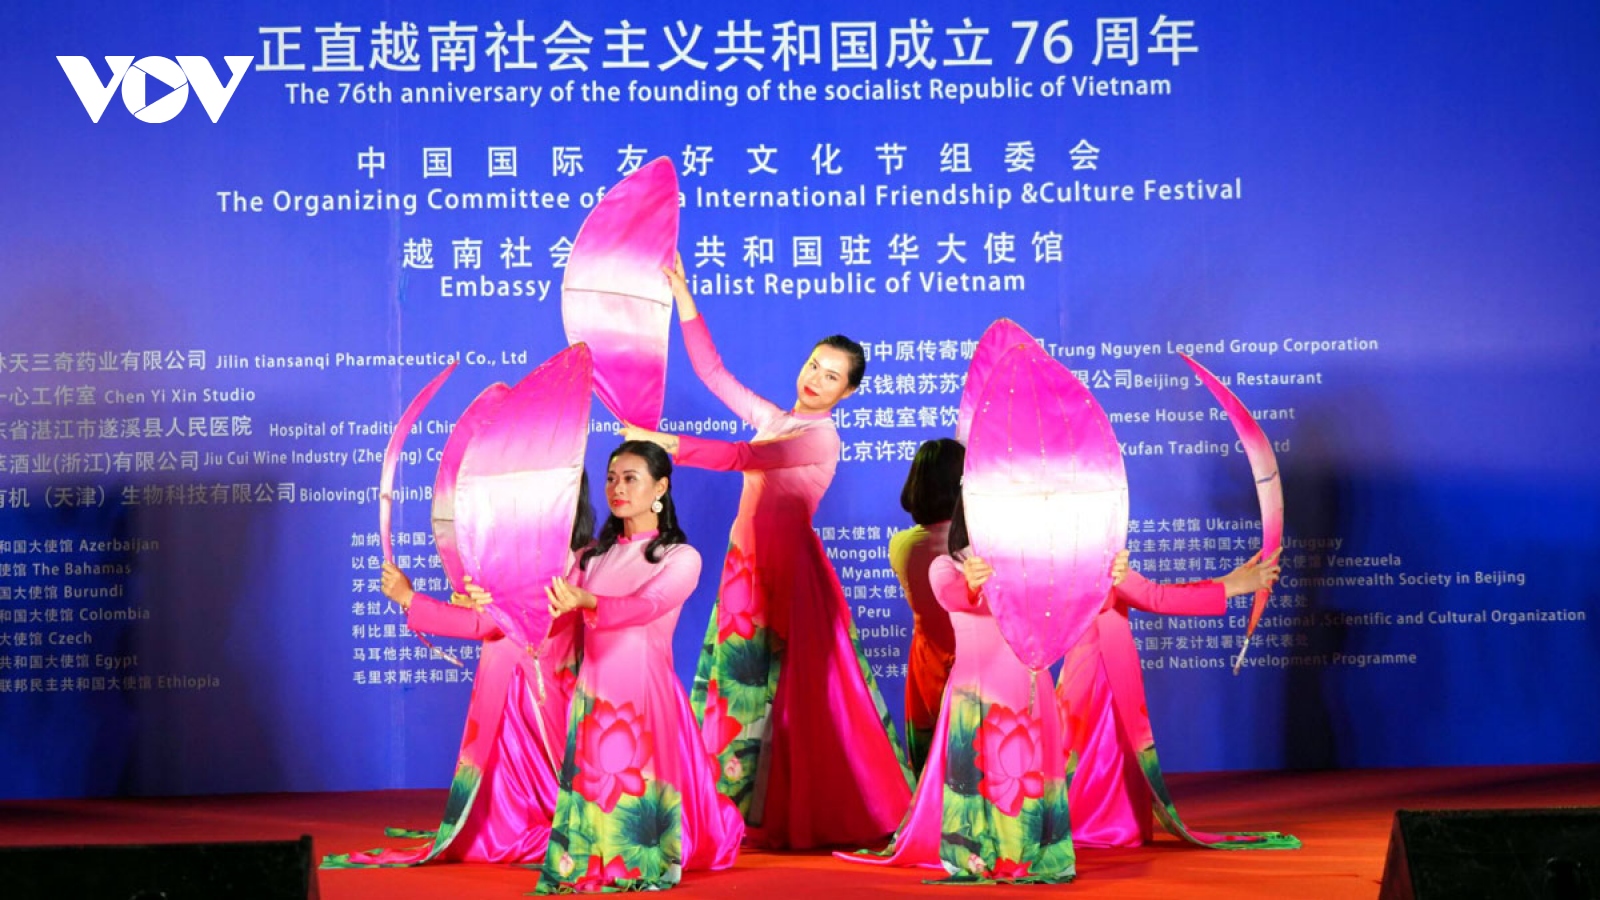 Giao lưu văn hóa nhân dịp Quốc khánh Việt Nam tại Trung Quốc